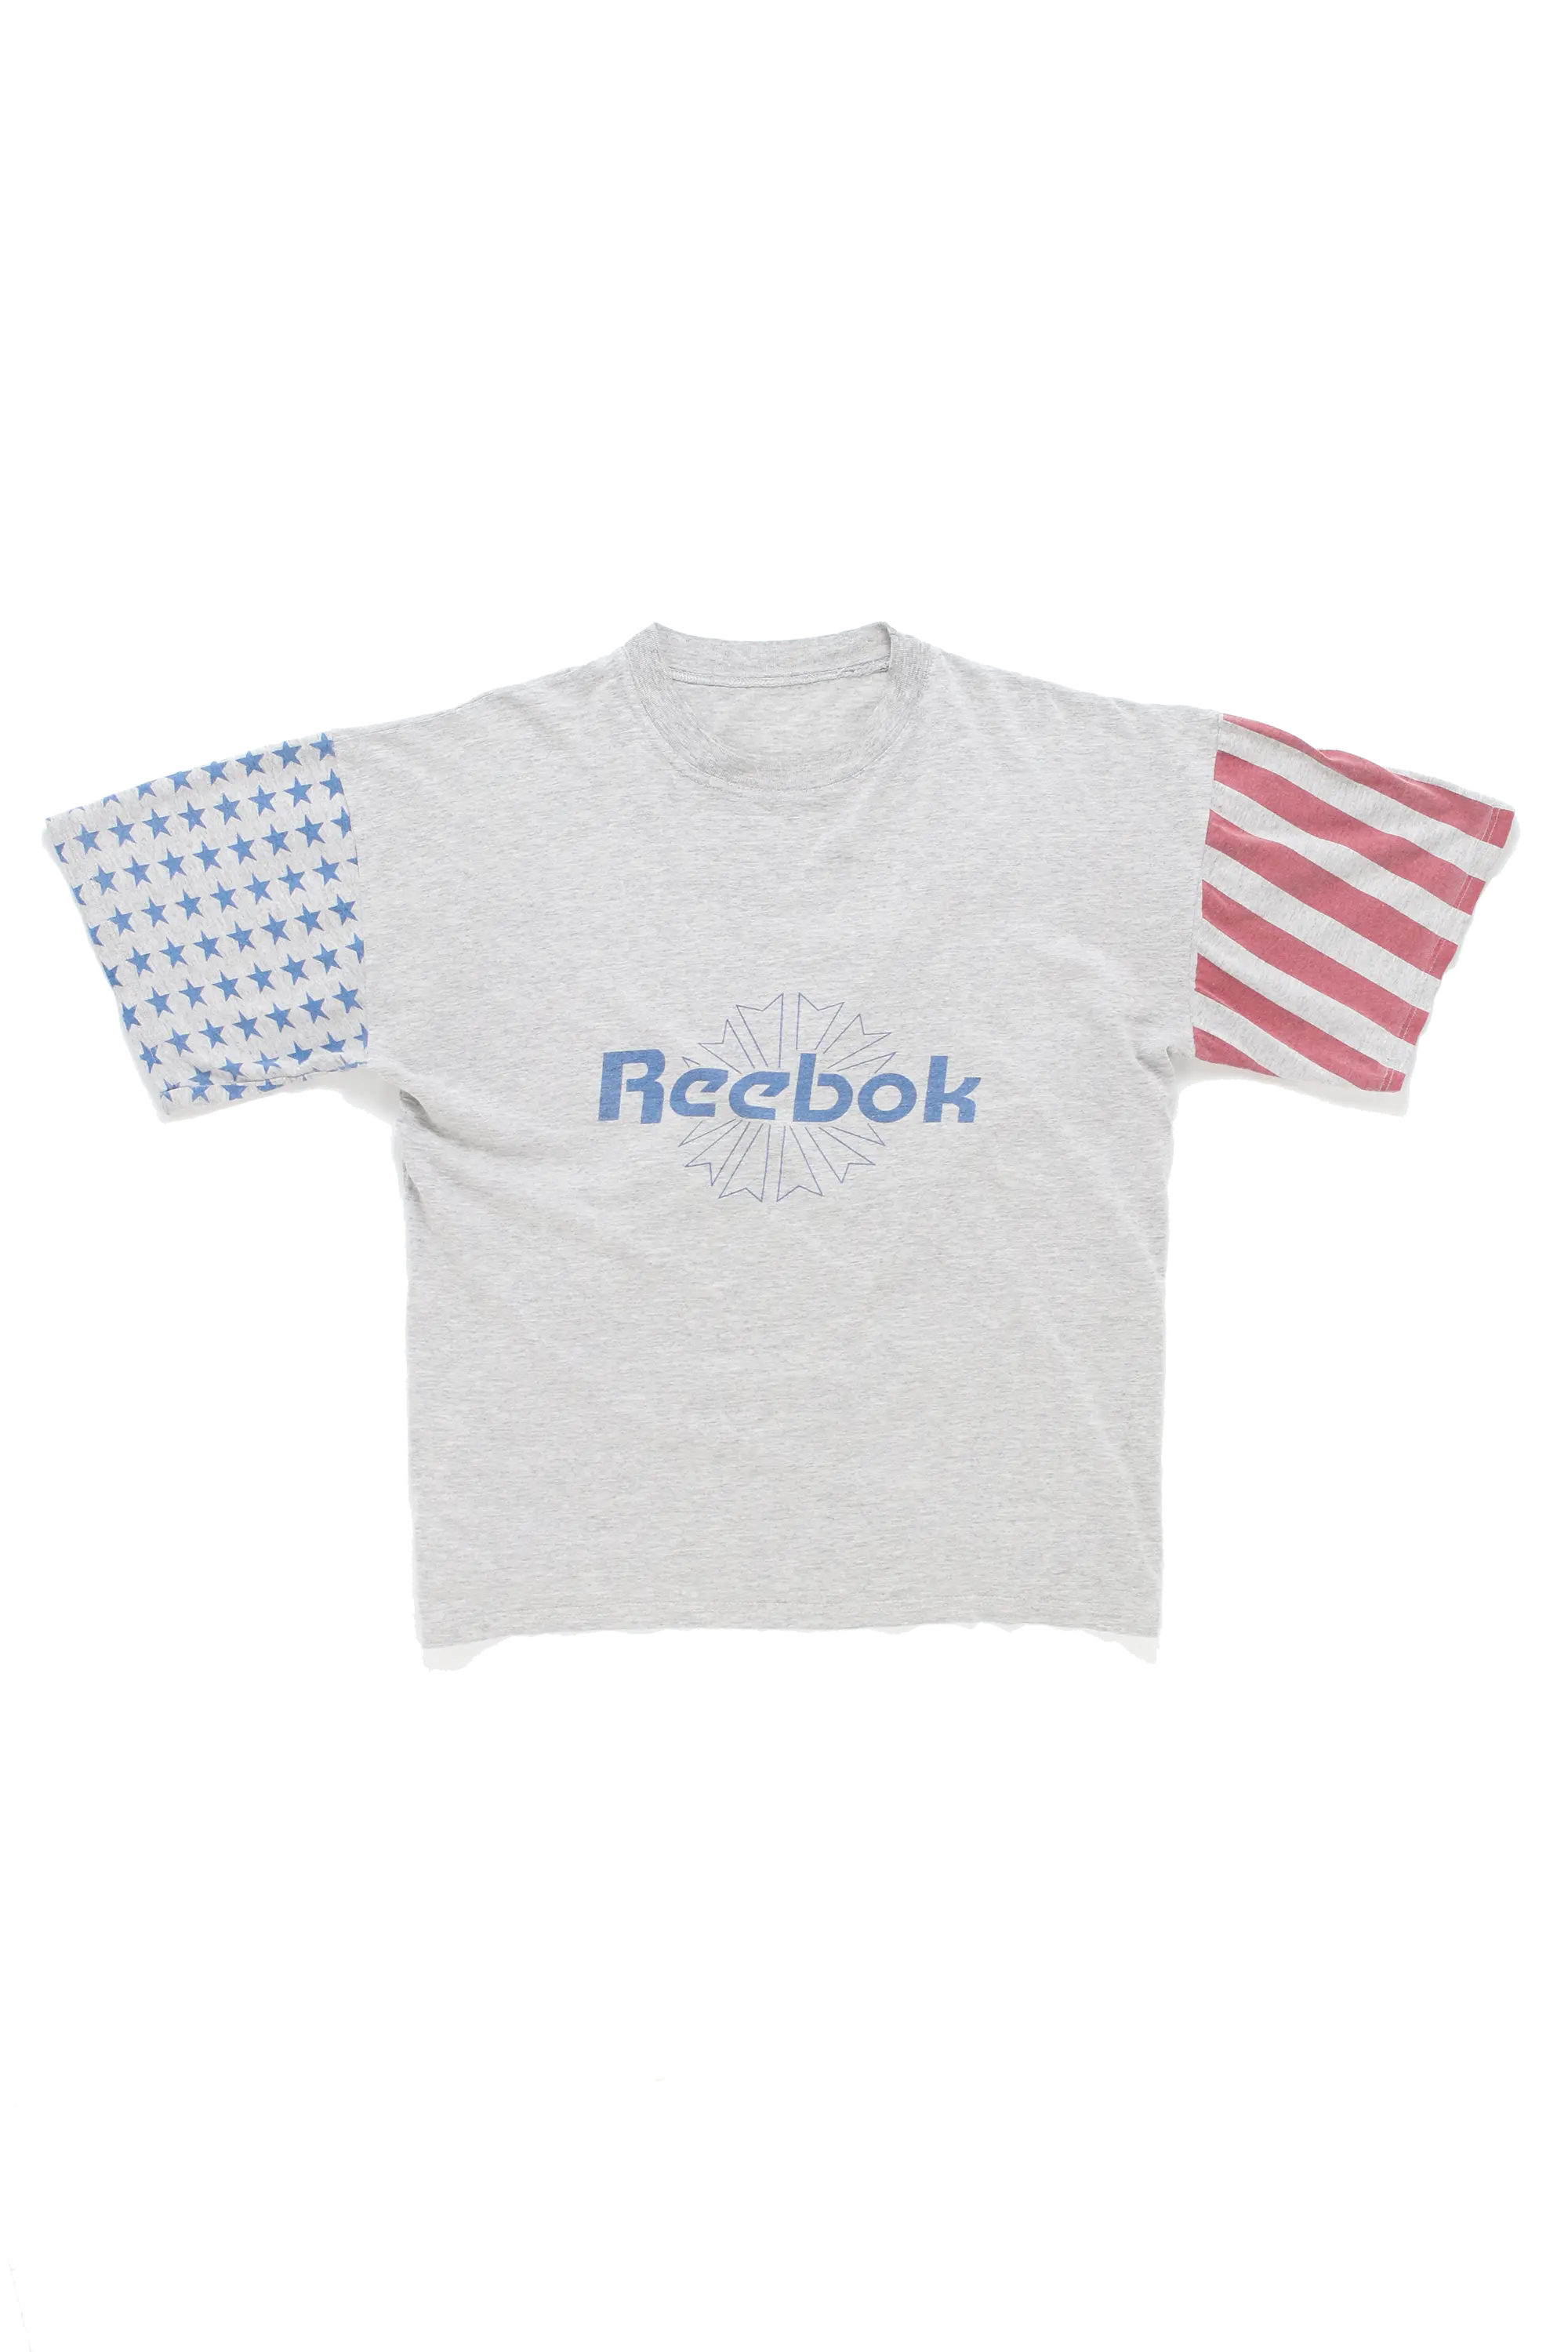 Reebok US Flag T.